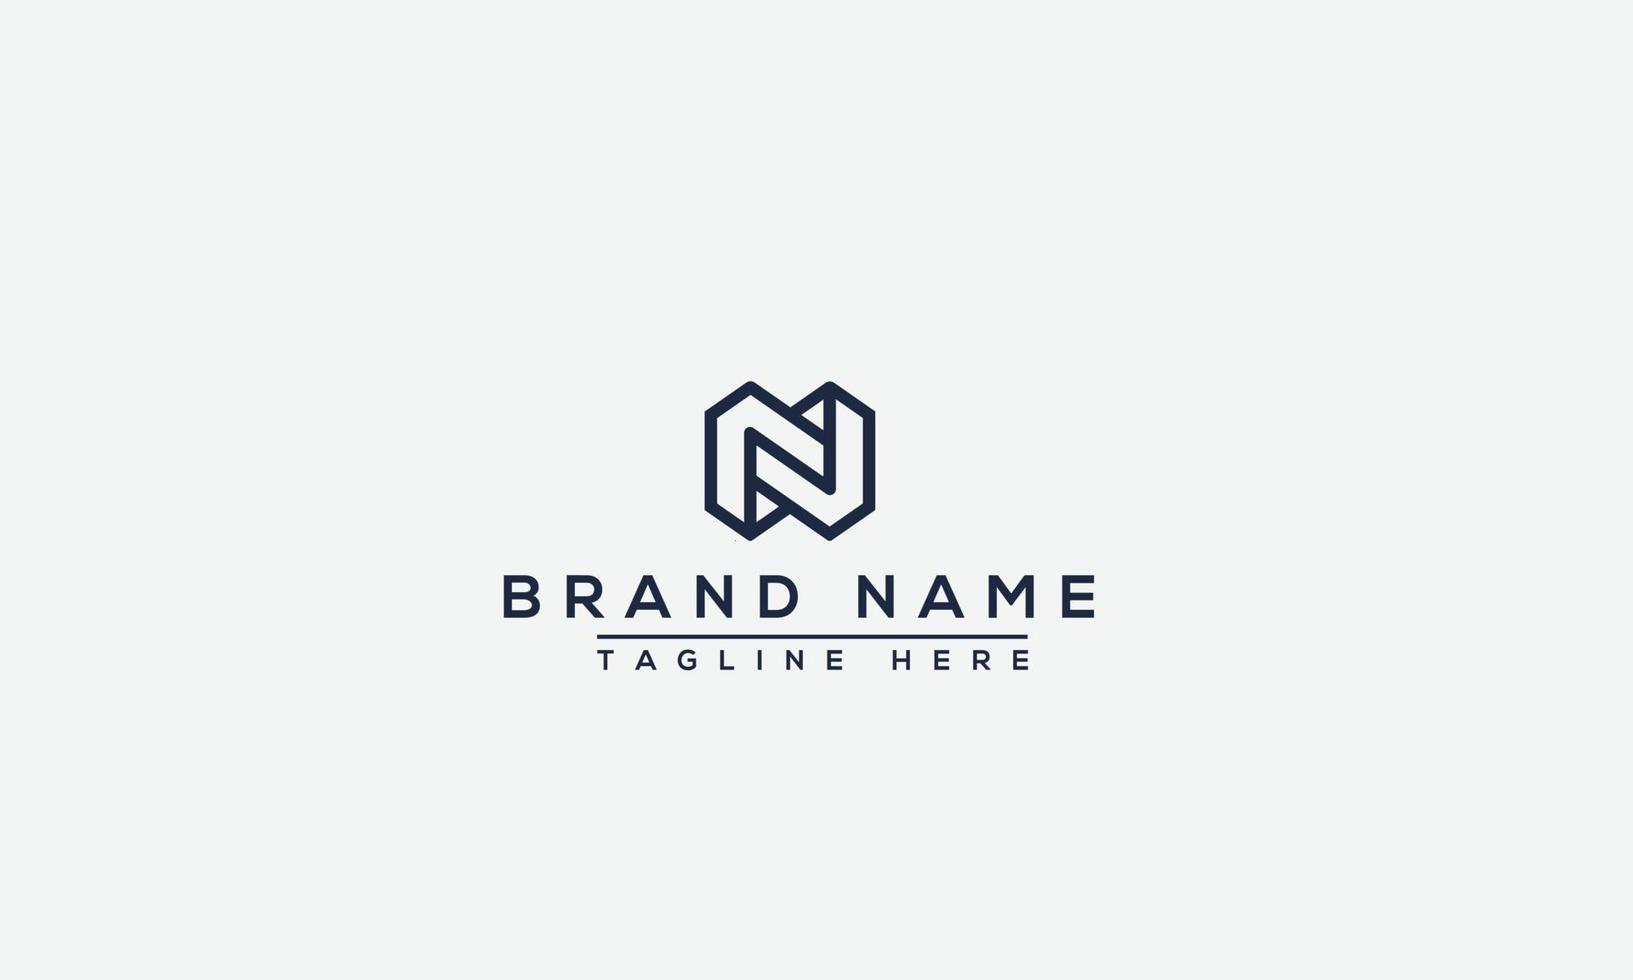 elemento de marca gráfico vectorial de plantilla de diseño de logotipo n vector